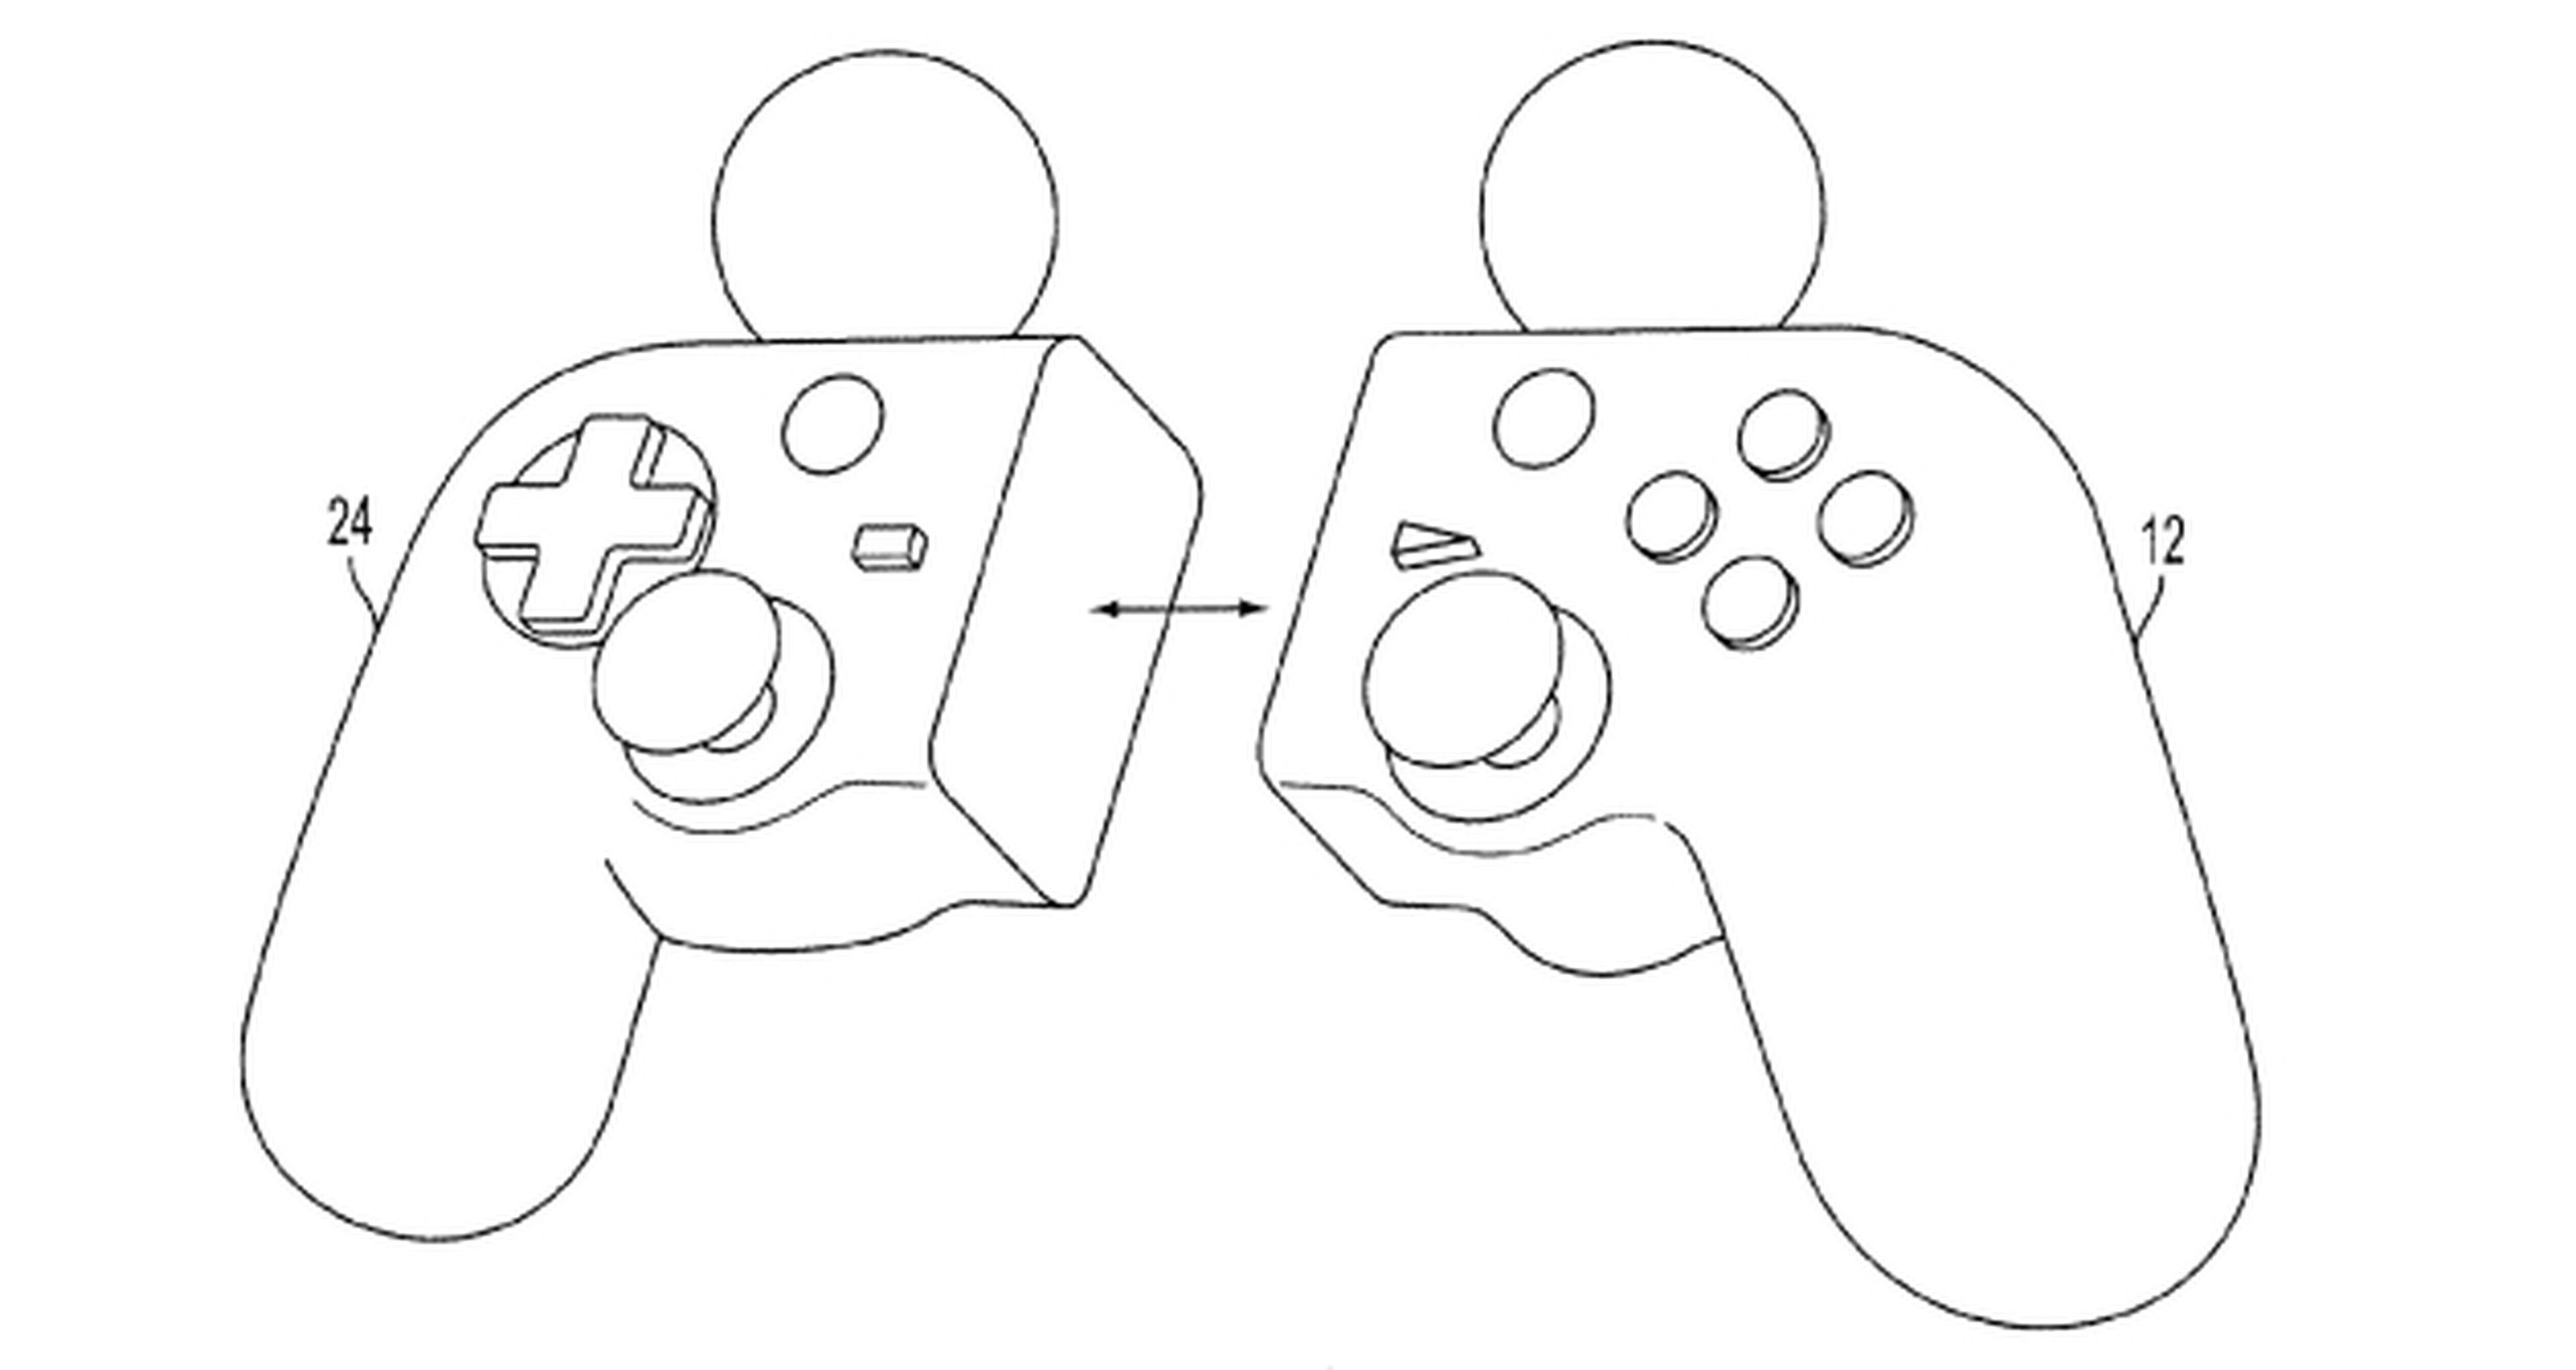 Sony patenta un mando híbrido 'Dual Move'